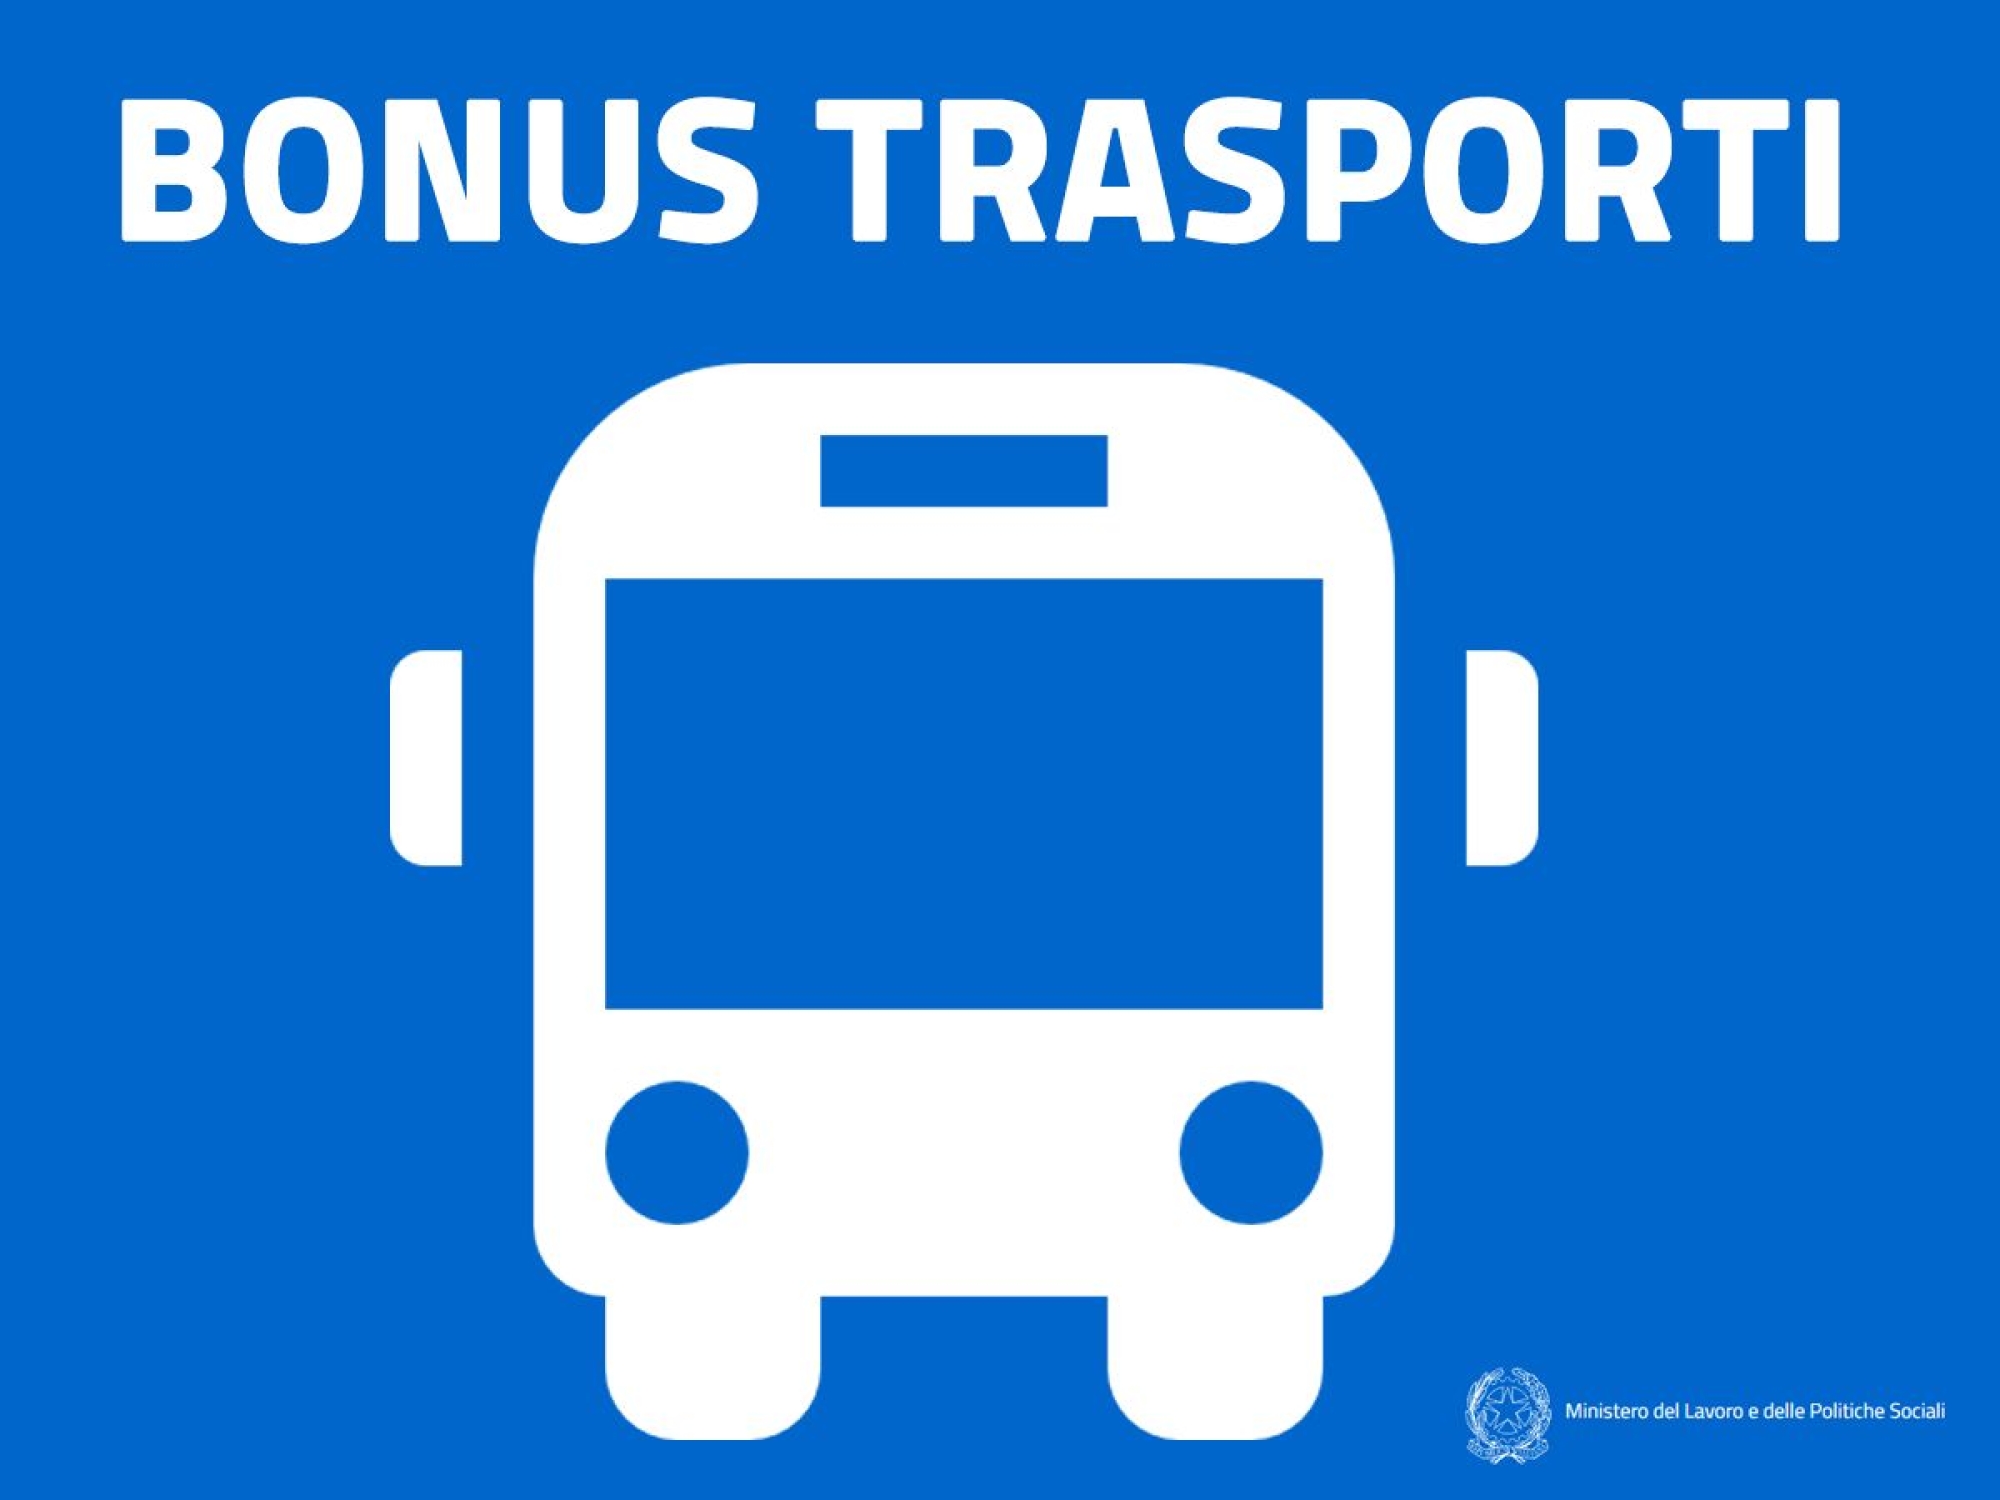 immagine blu con scritta bianca bonus trasporti